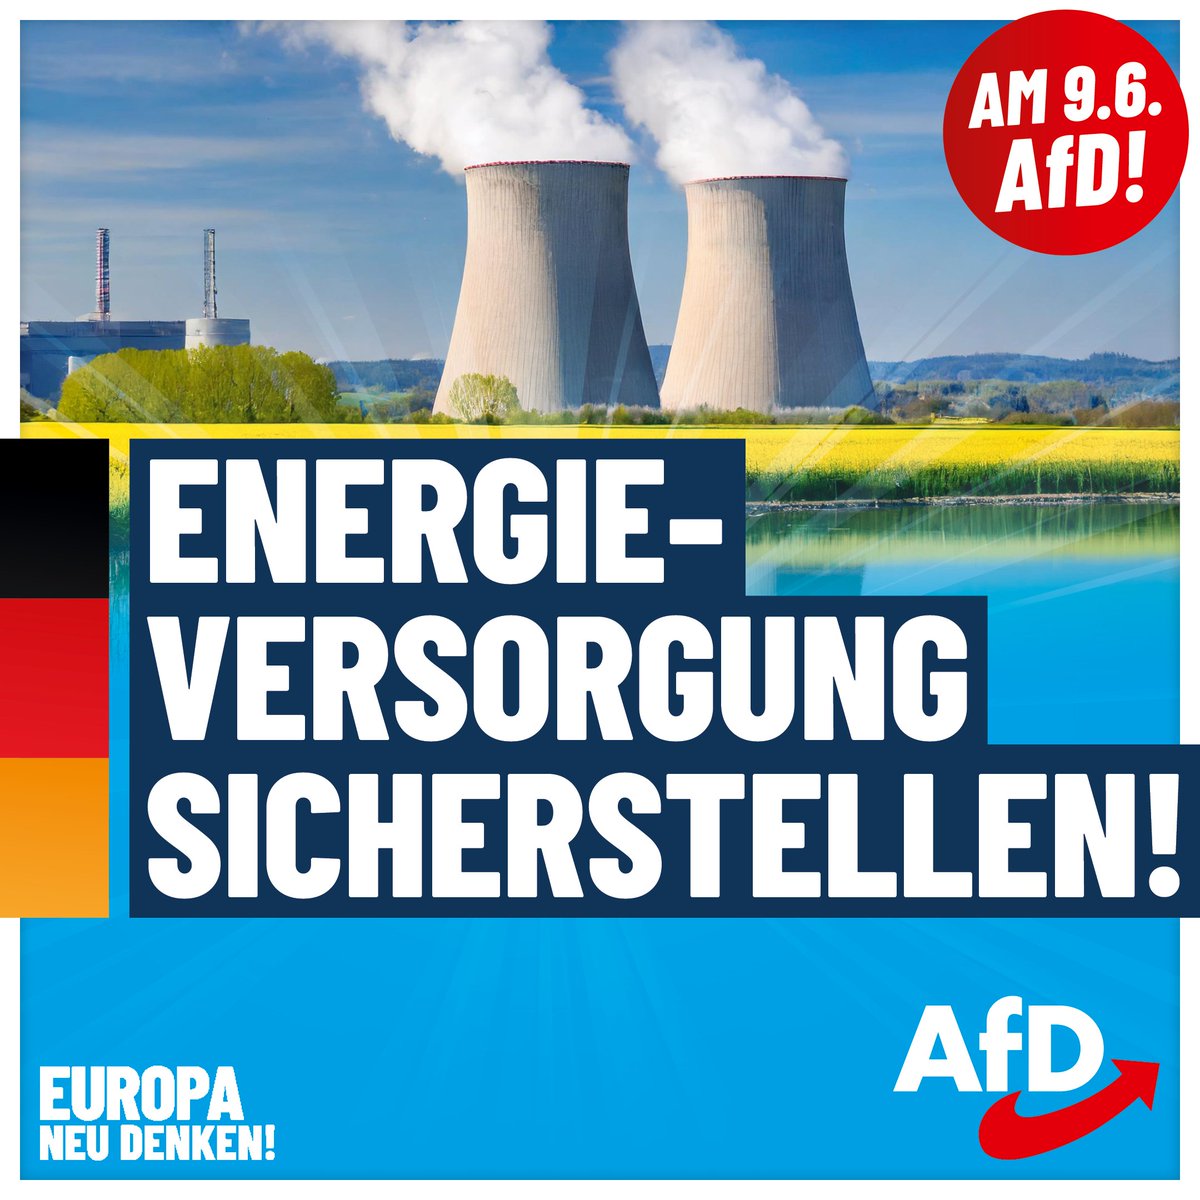 Warum Deine Stromrechnung so hoch ist? Dank #Habeck und der #EU!

Wir fordern einen ausgewogenen Energie-Mix, der auch #Kernenergie und #Braunkohle einschließt. #DeshalbAfD #AfD

Informiere Dich jetzt auf pulse.ly/fa4l37egvt über unsere Ziele für Europa!